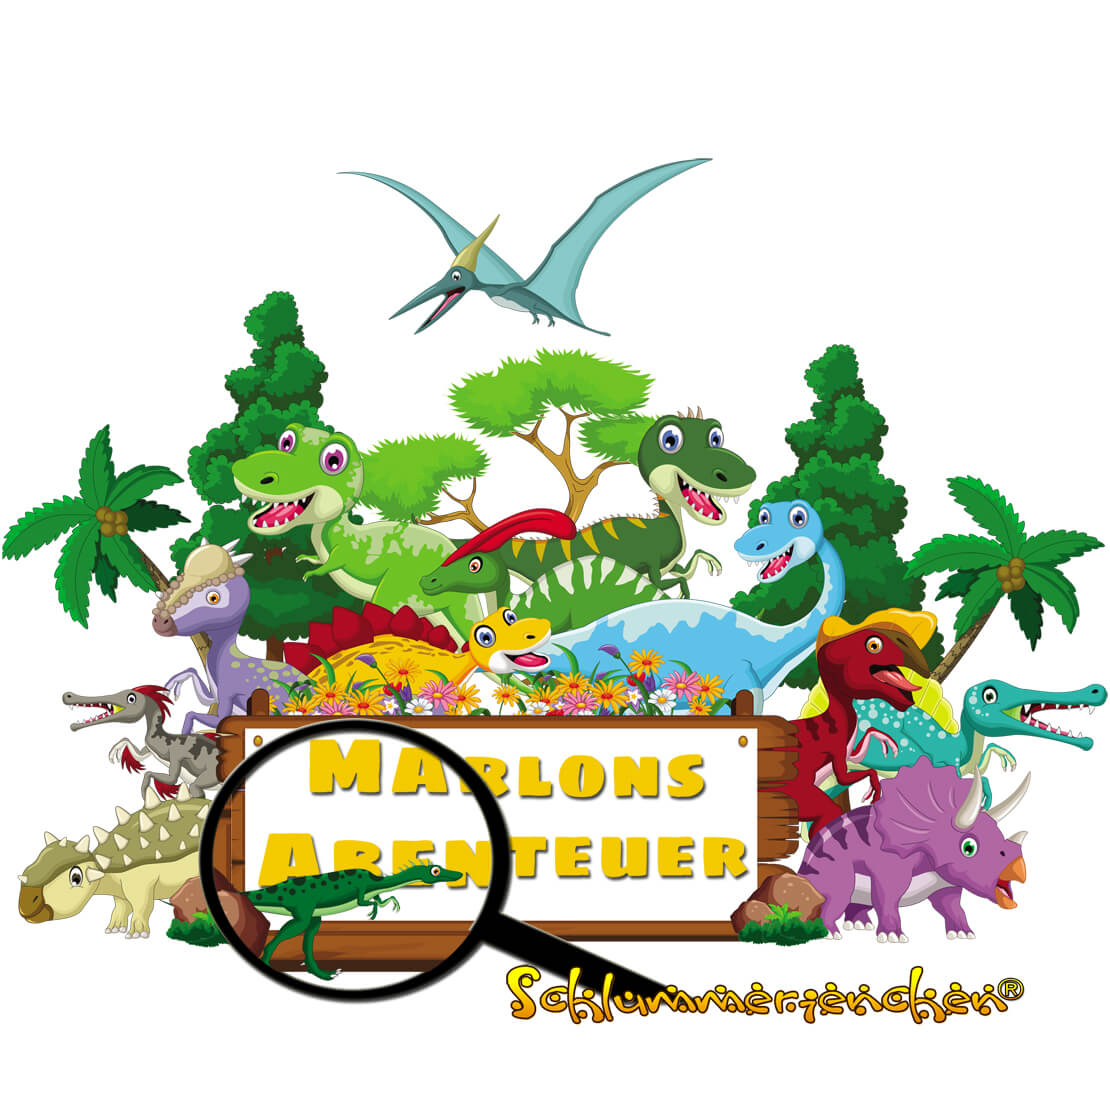 Marlons Abenteuer Cover Bild mit vielen Dinosauriern - Kindergeschichte auf schlummerienchen.de